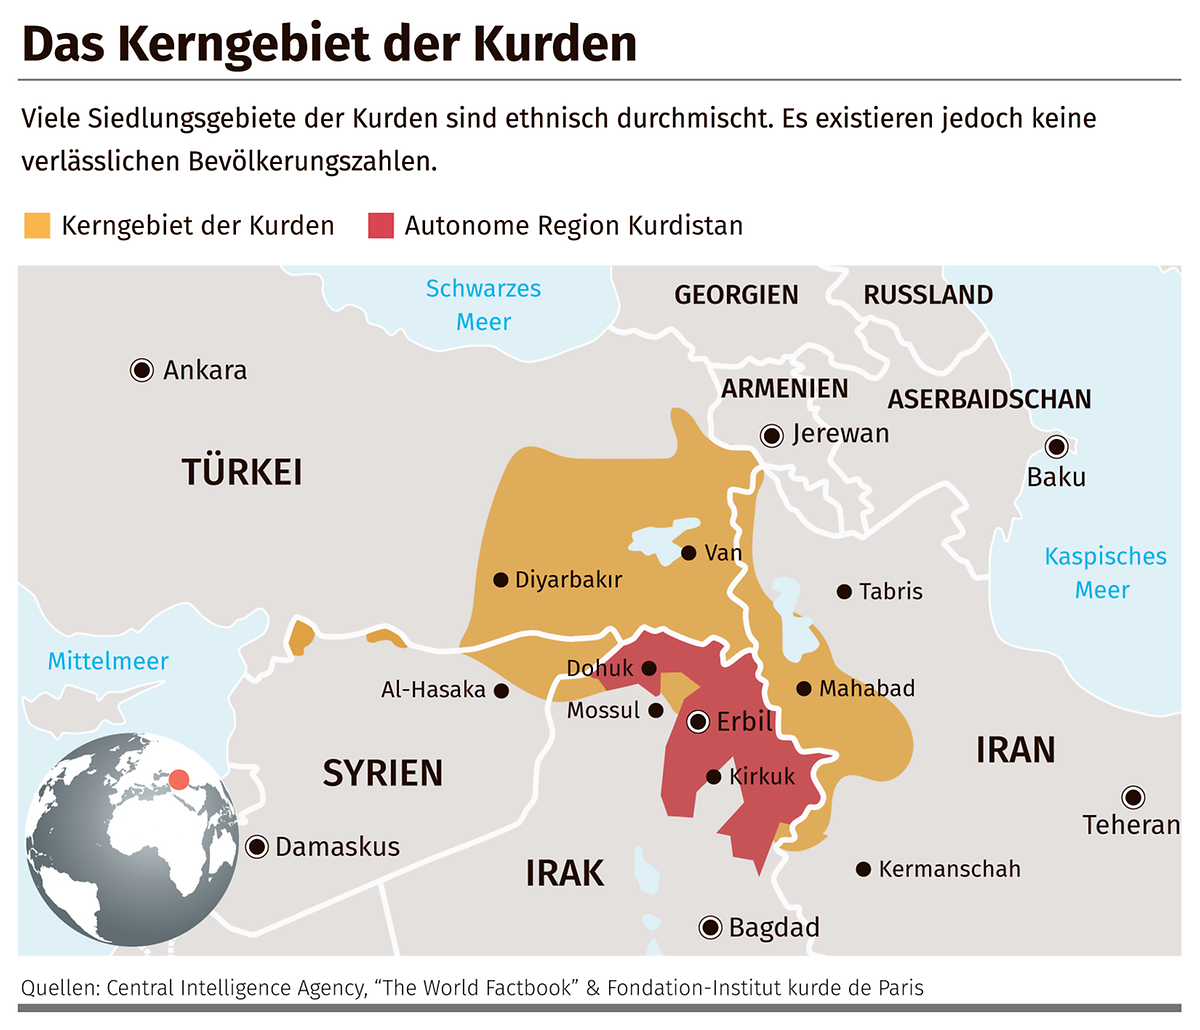 Die Kerngebiete der Kurden